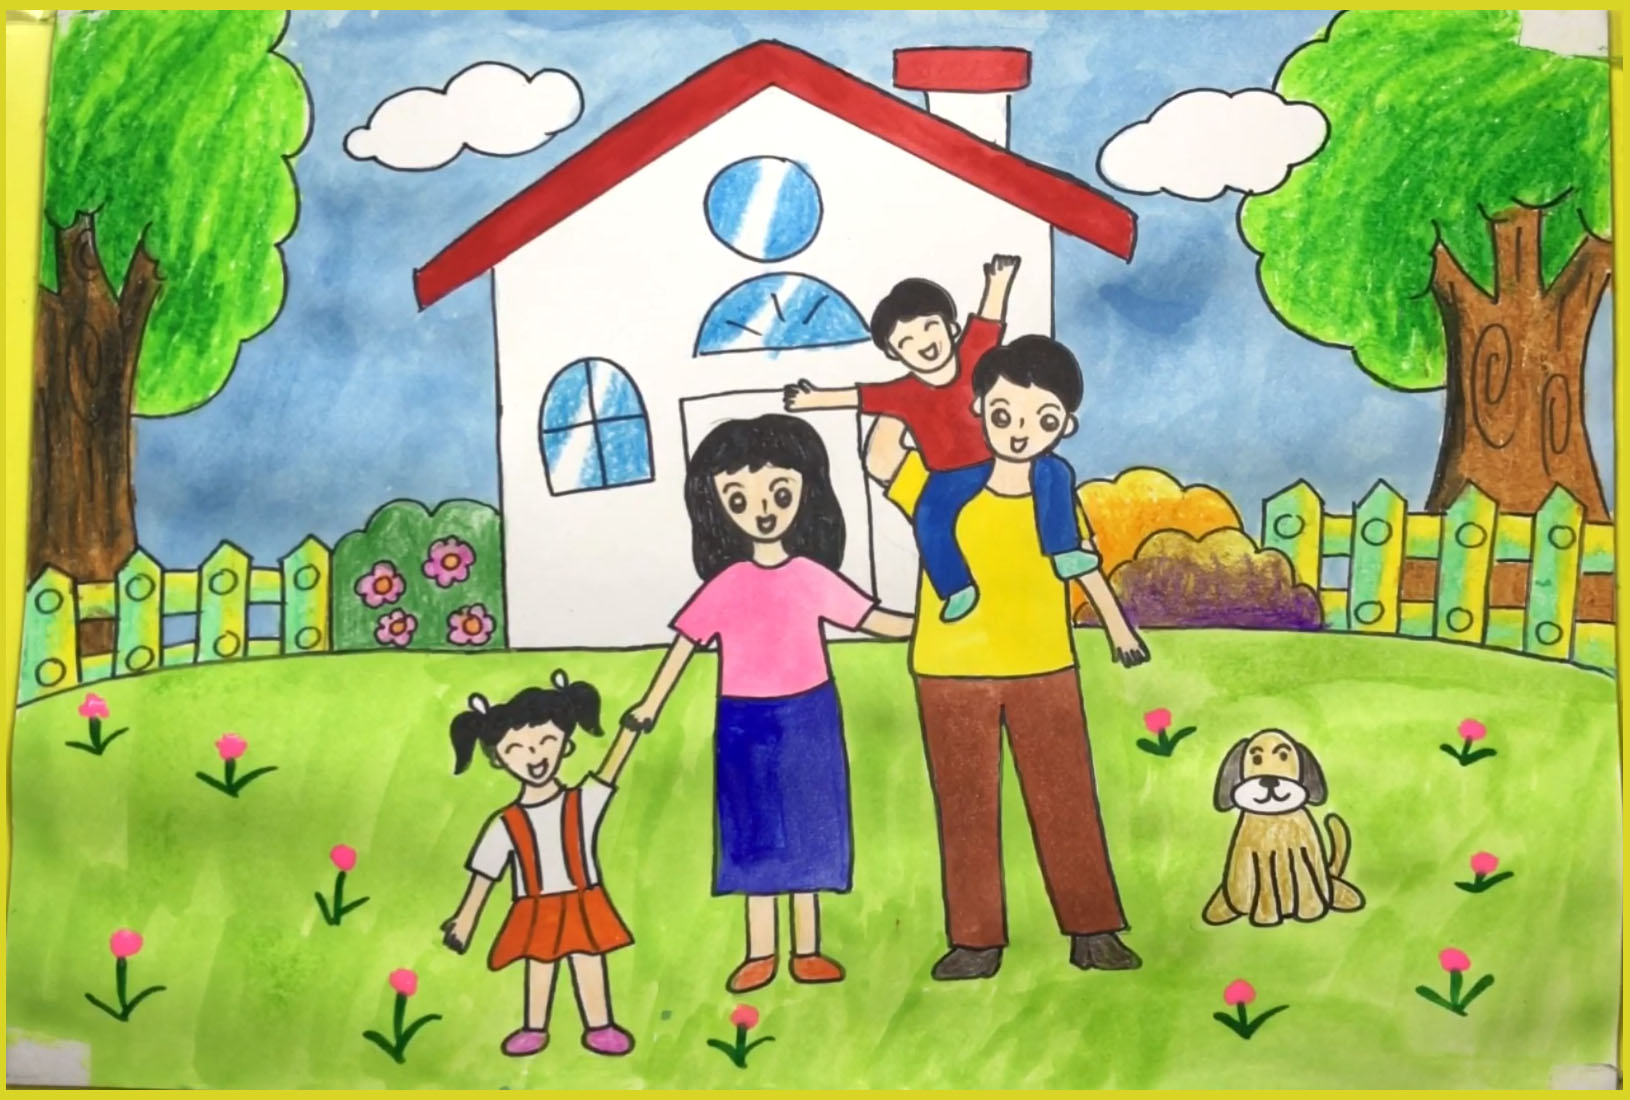 Tuyển tập vẽ tranh đề tài gia đình đẹp và ý nghĩa cho gia đình bạn